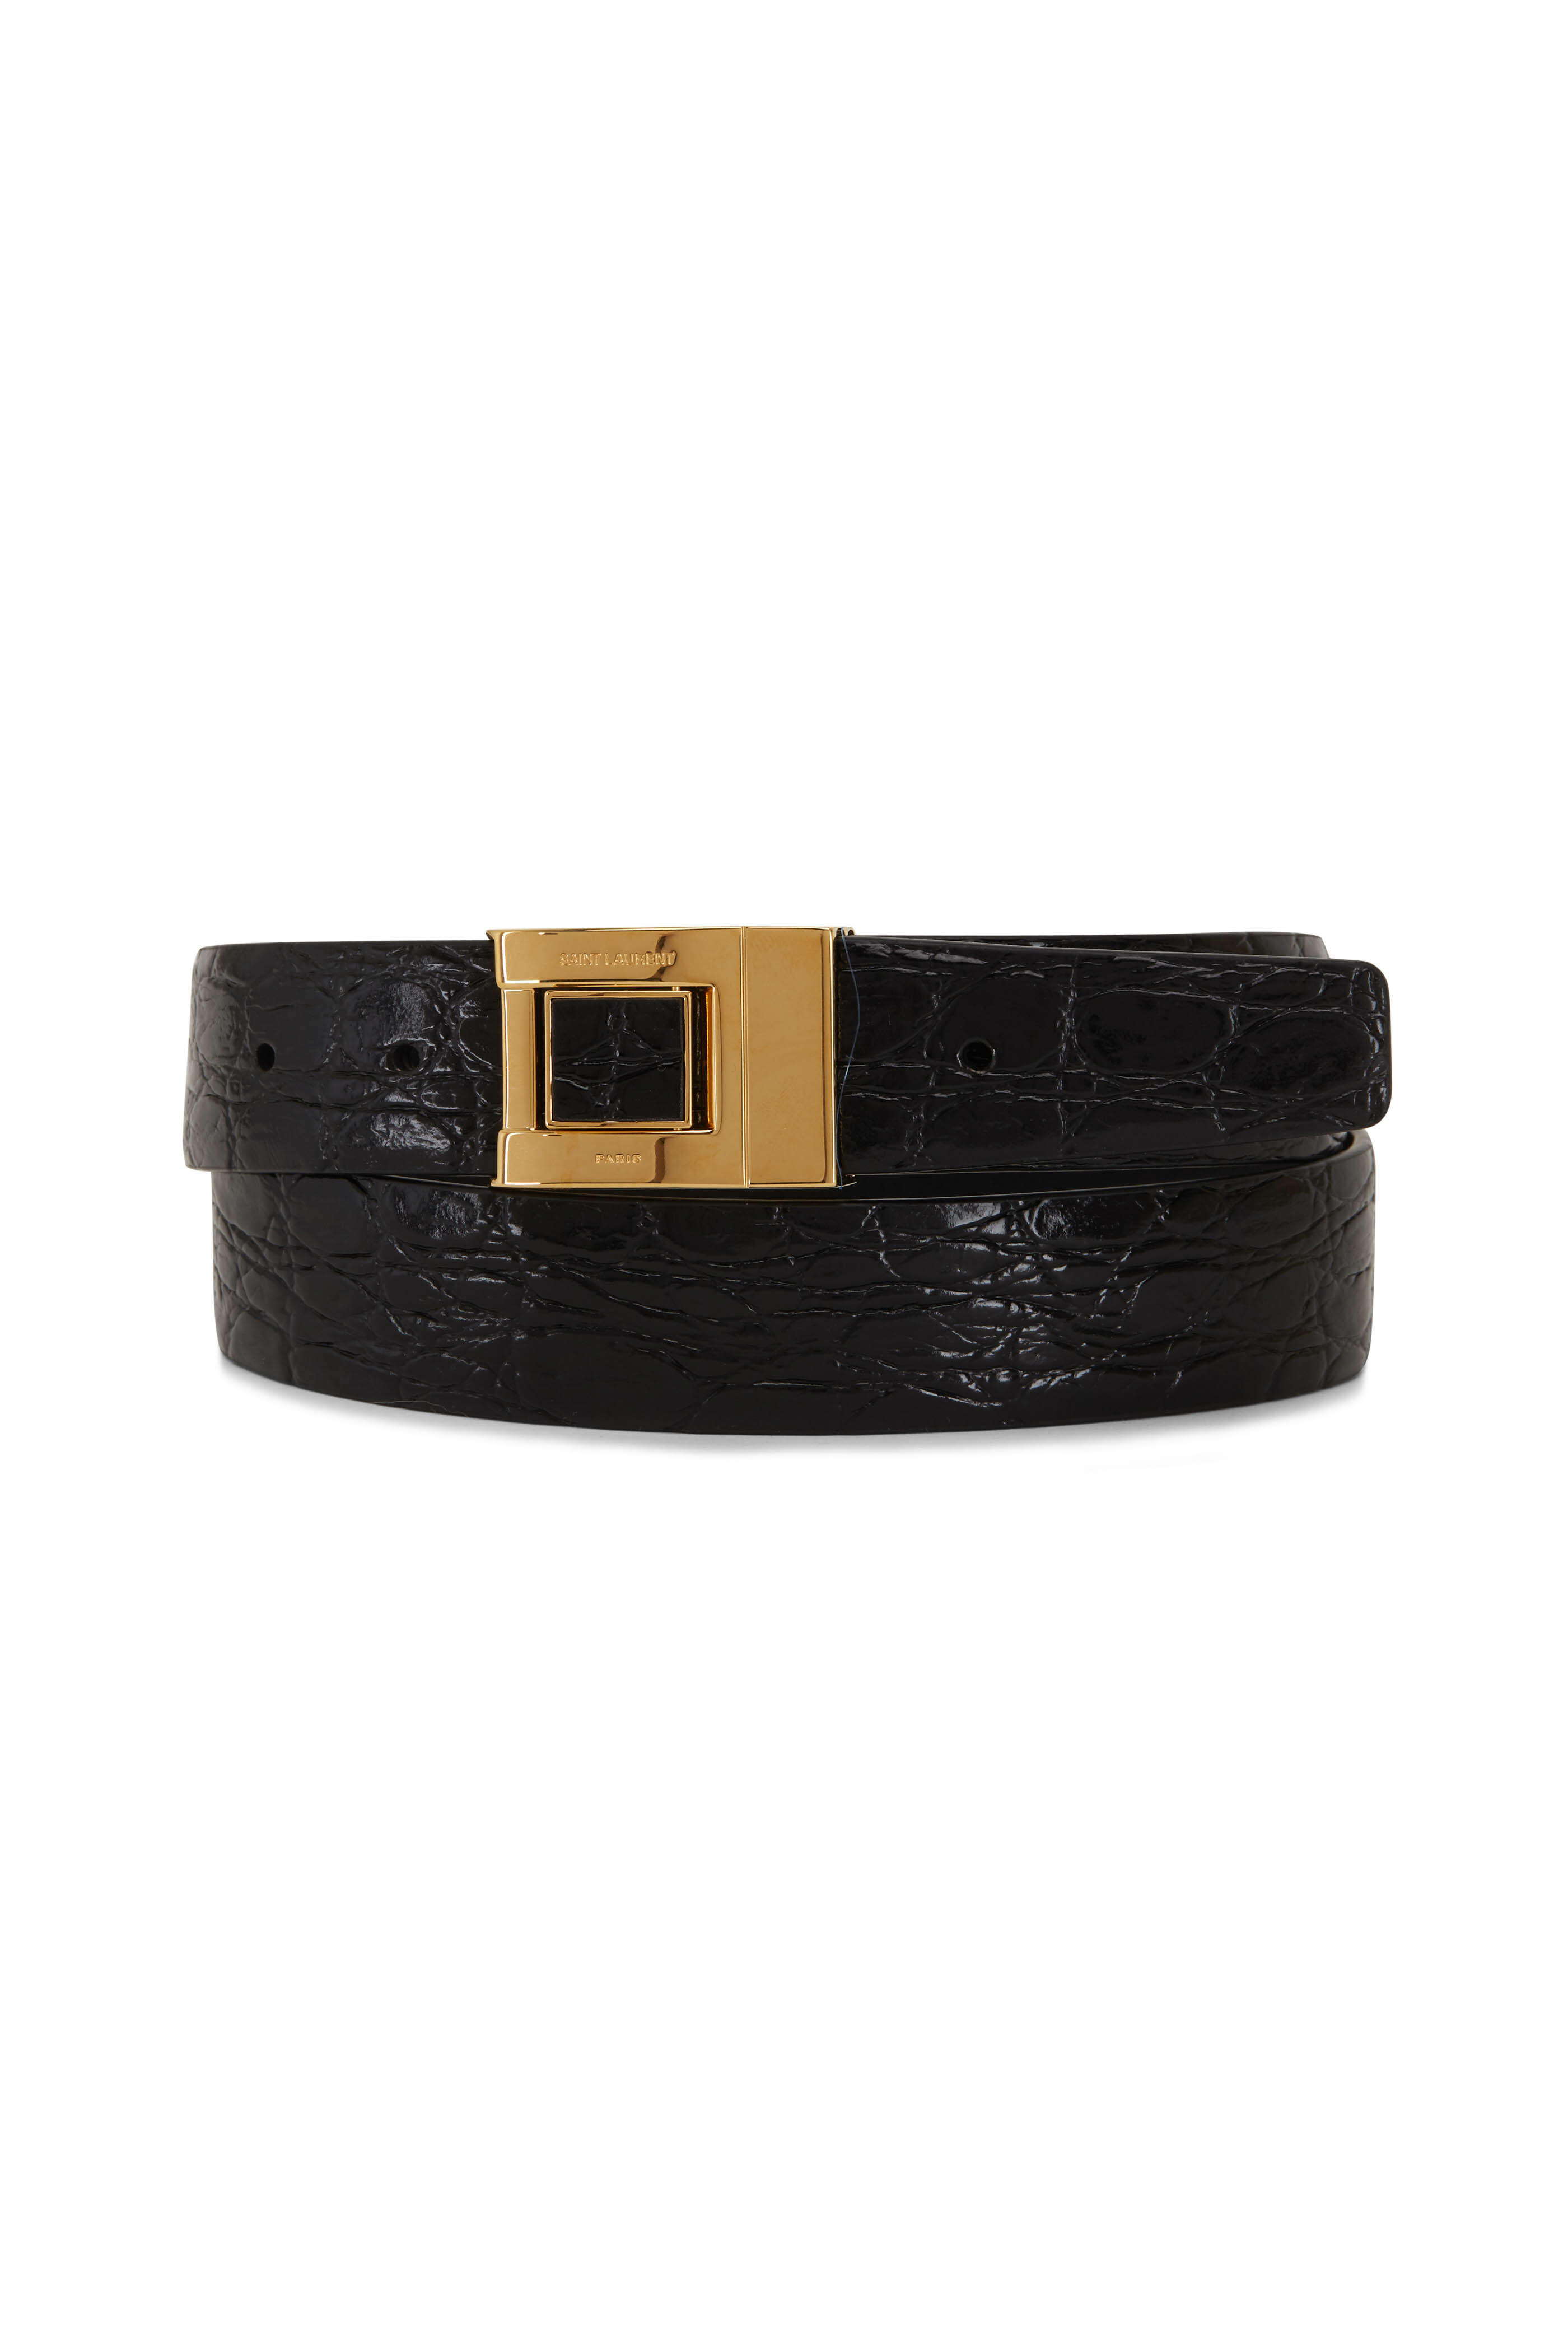 Saint Laurent buckle leather belt - Black